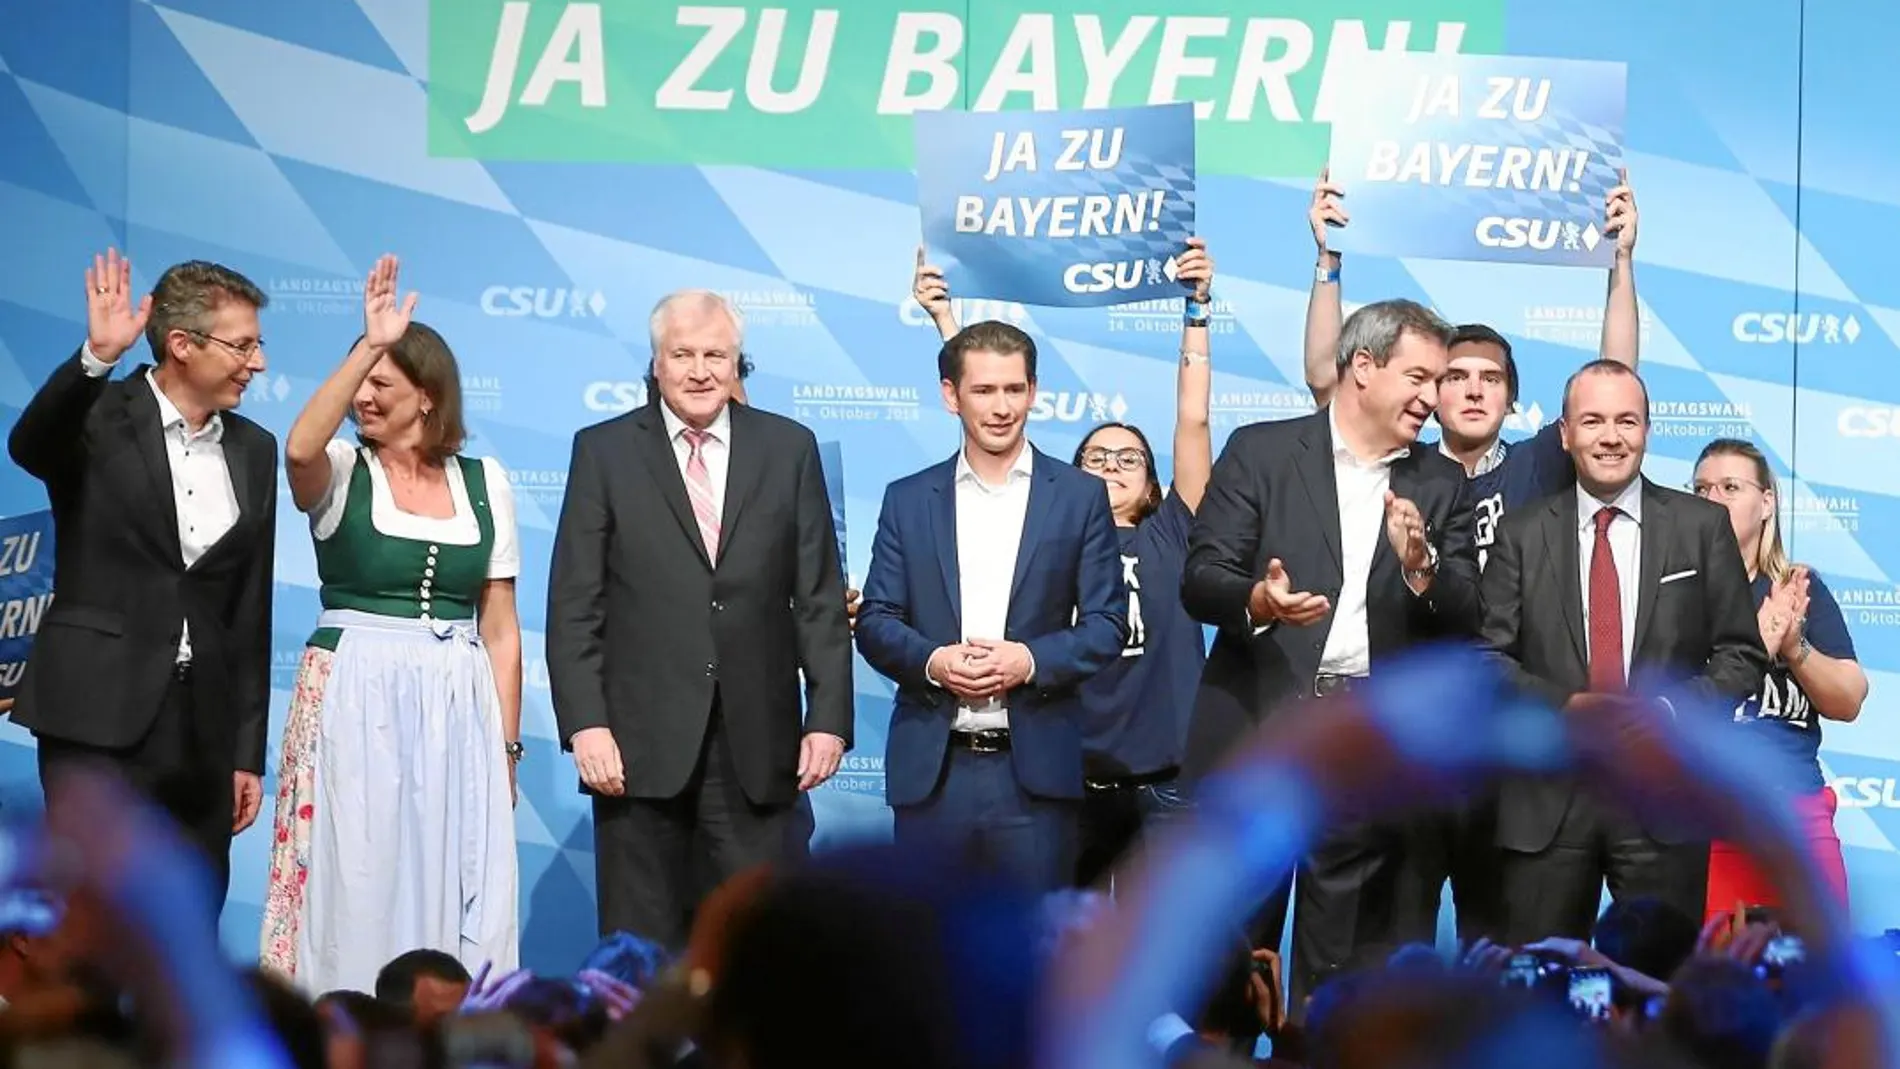 El modelo austriaco El canciller del país vecino, Sebastian Kurz, fue el invitado estelar del acto de clausura de la CSU por su dureza con la inmigración ilegal